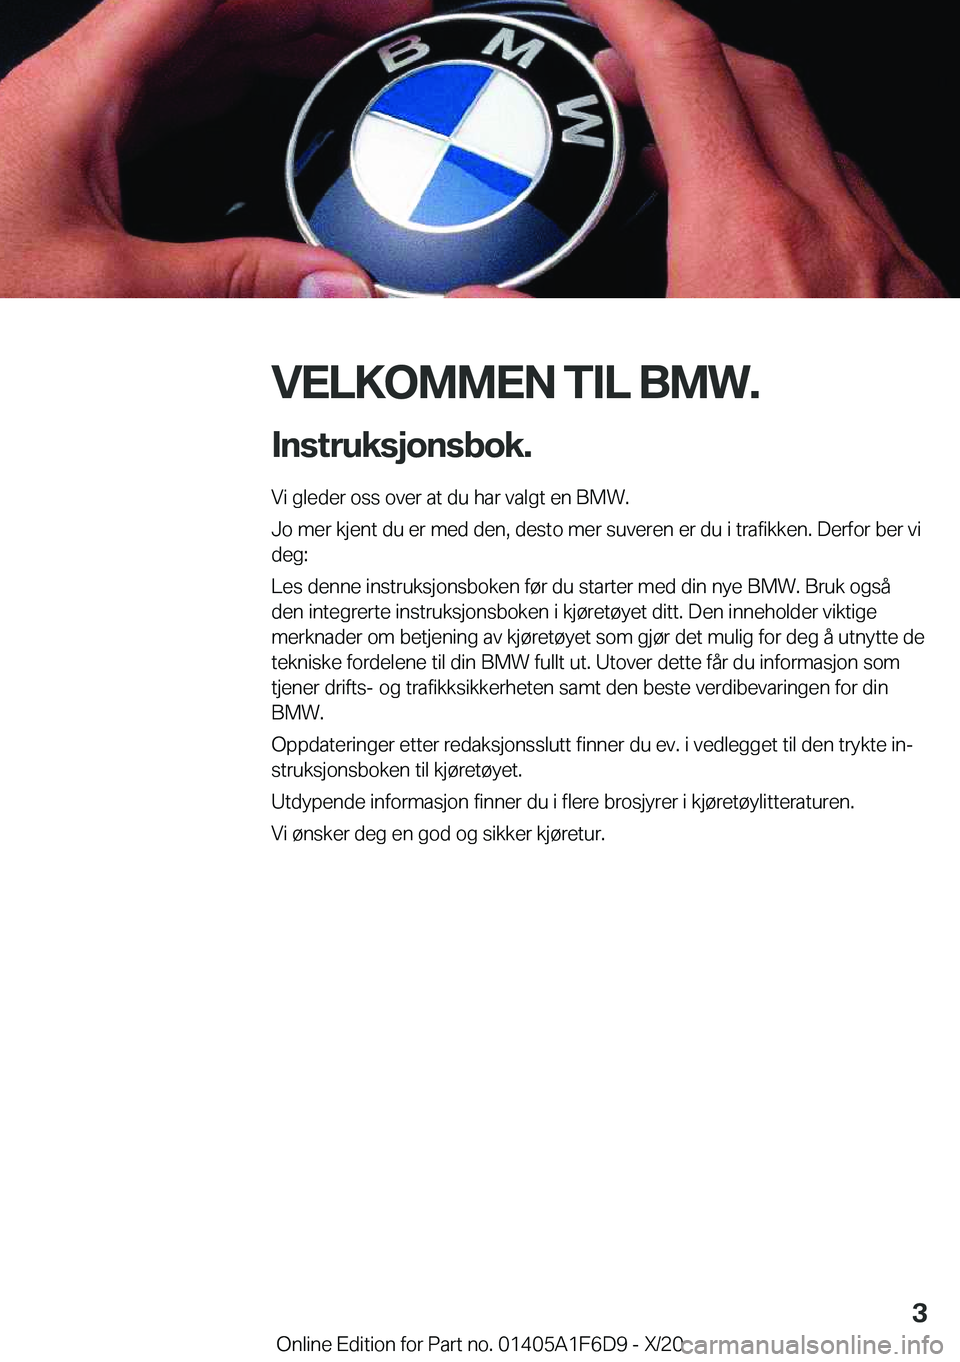 BMW X4 2021  InstruksjonsbØker (in Norwegian) �V�E�L�K�O�M�M�E�N��T�I�L��B�M�W�.�I�n�s�t�r�u�k�s�j�o�n�s�b�o�k�.
�V�i��g�l�e�d�e�r��o�s�s��o�v�e�r��a�t��d�u��h�a�r��v�a�l�g�t��e�n��B�M�W�.
�J�o��m�e�r��k�j�e�n�t��d�u��e�r��m�e�d�